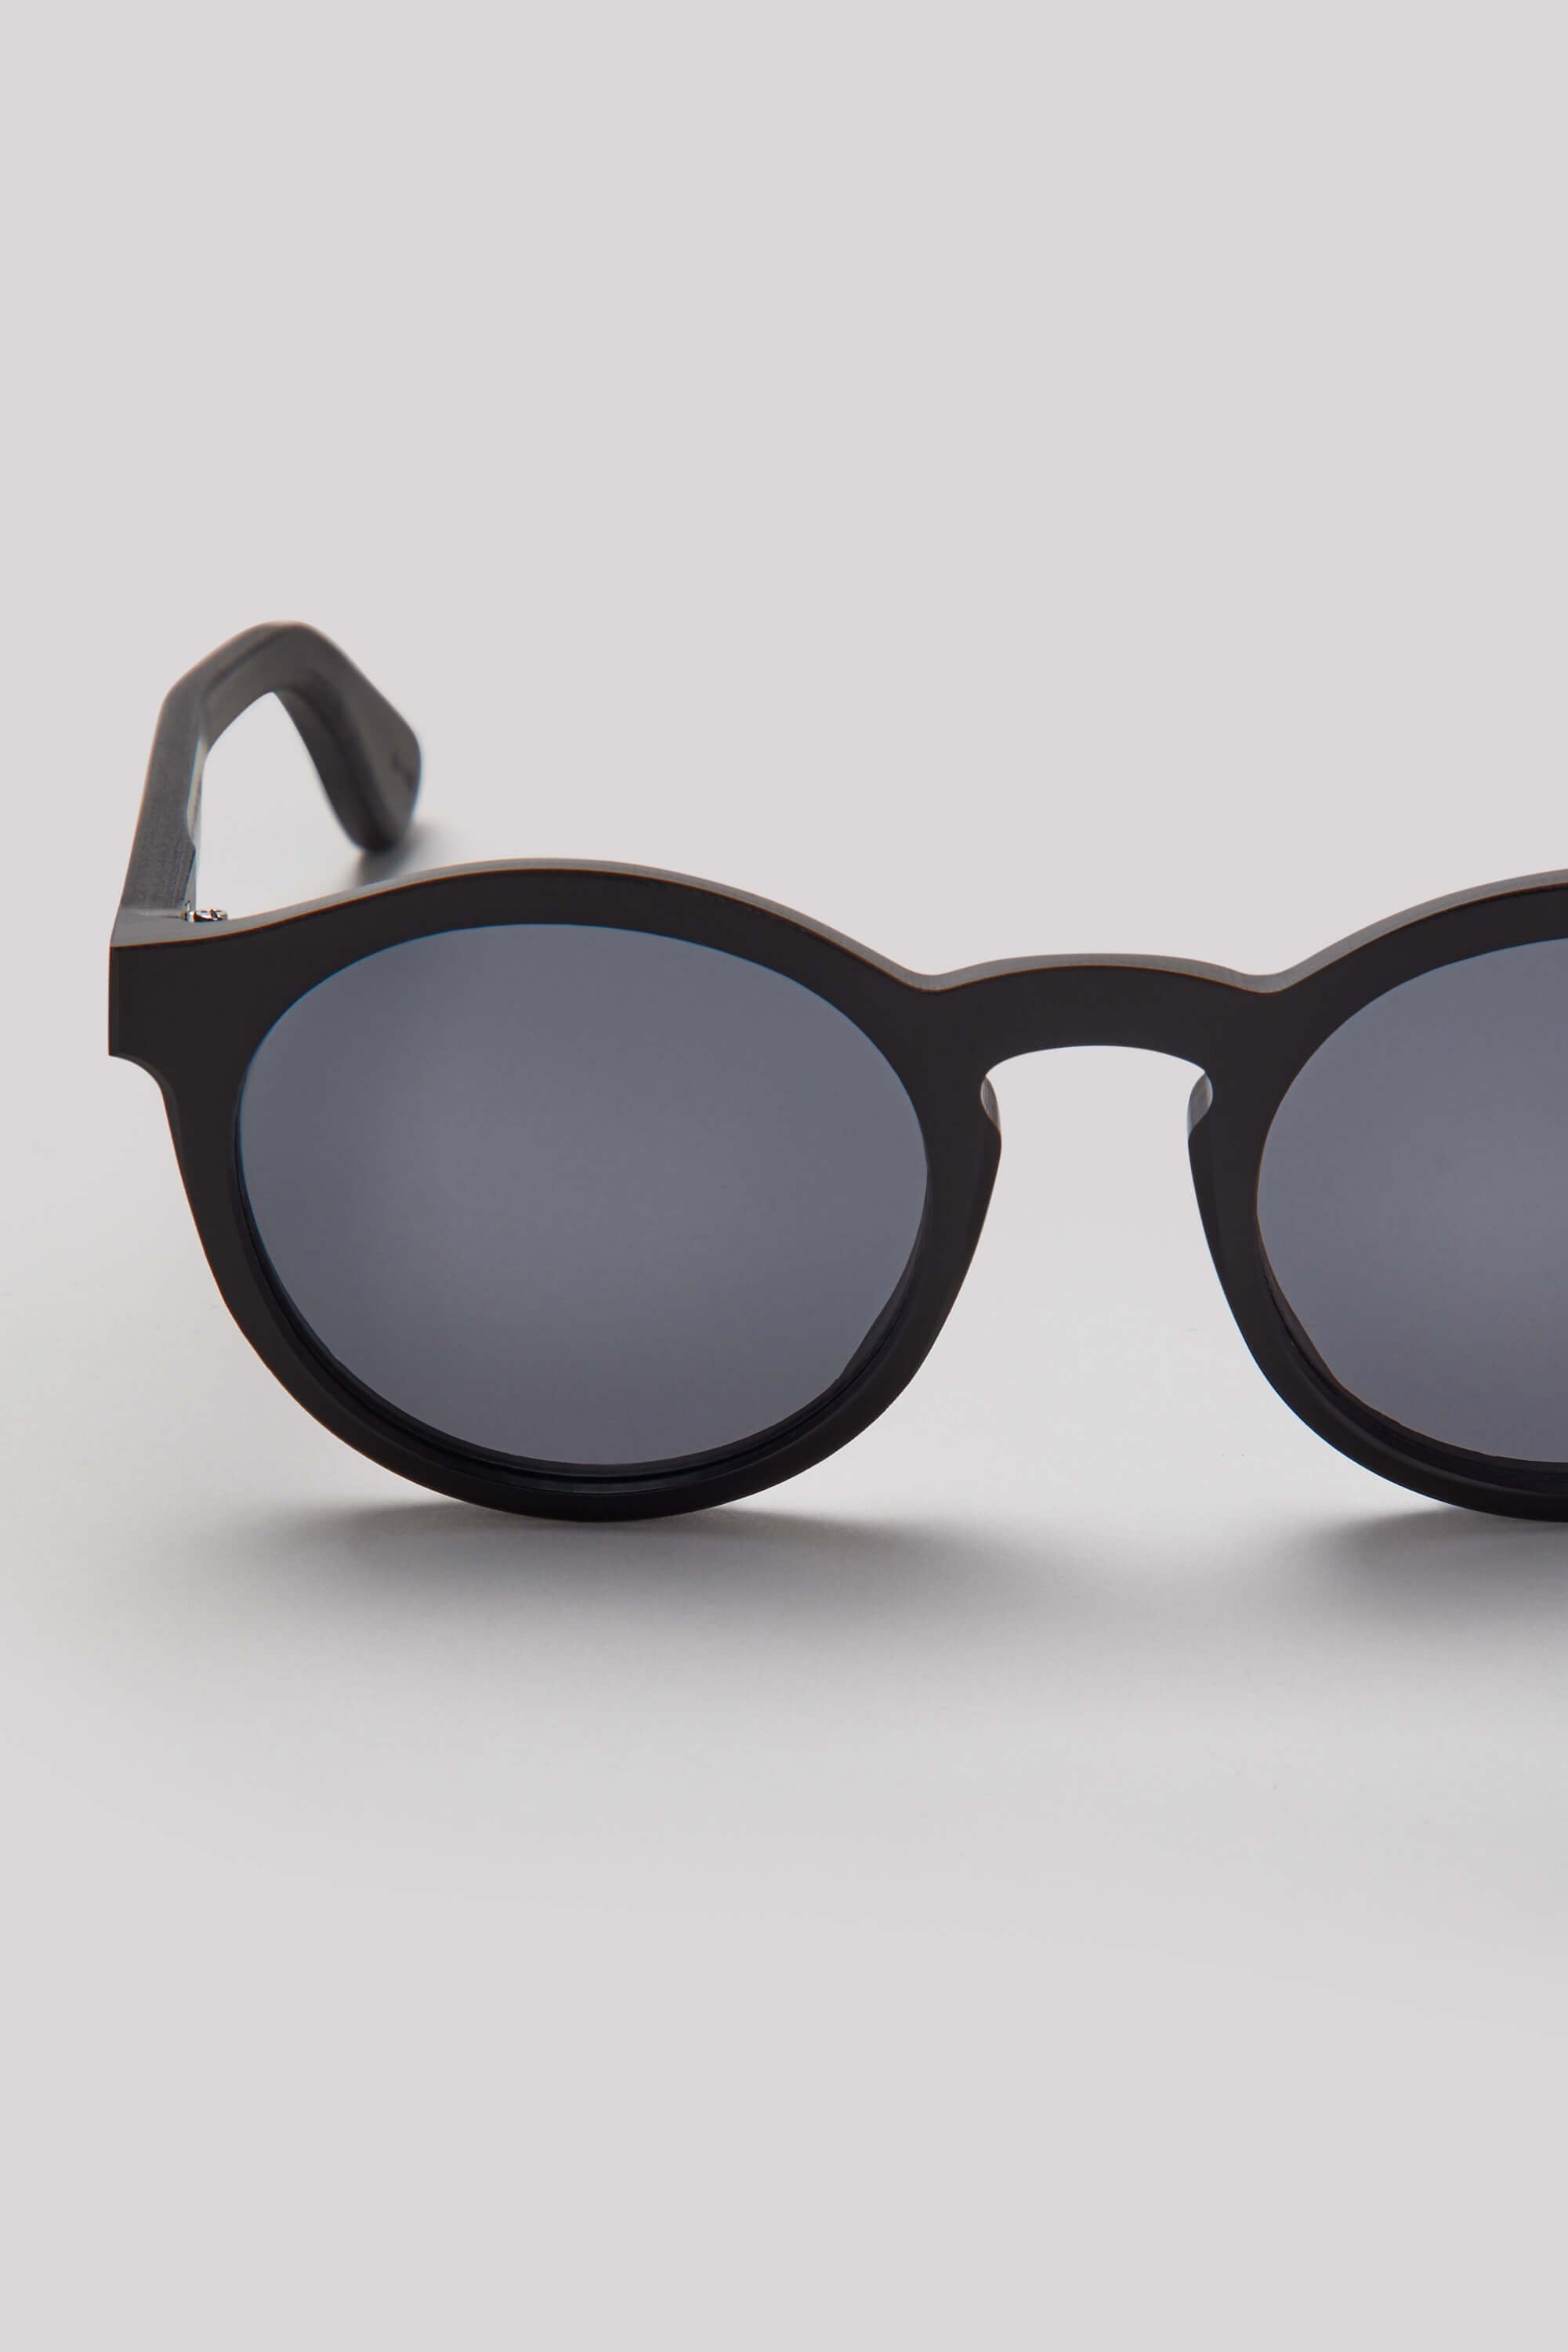 Black round sunglasses for men smoke lens round men's crystal gray glasses